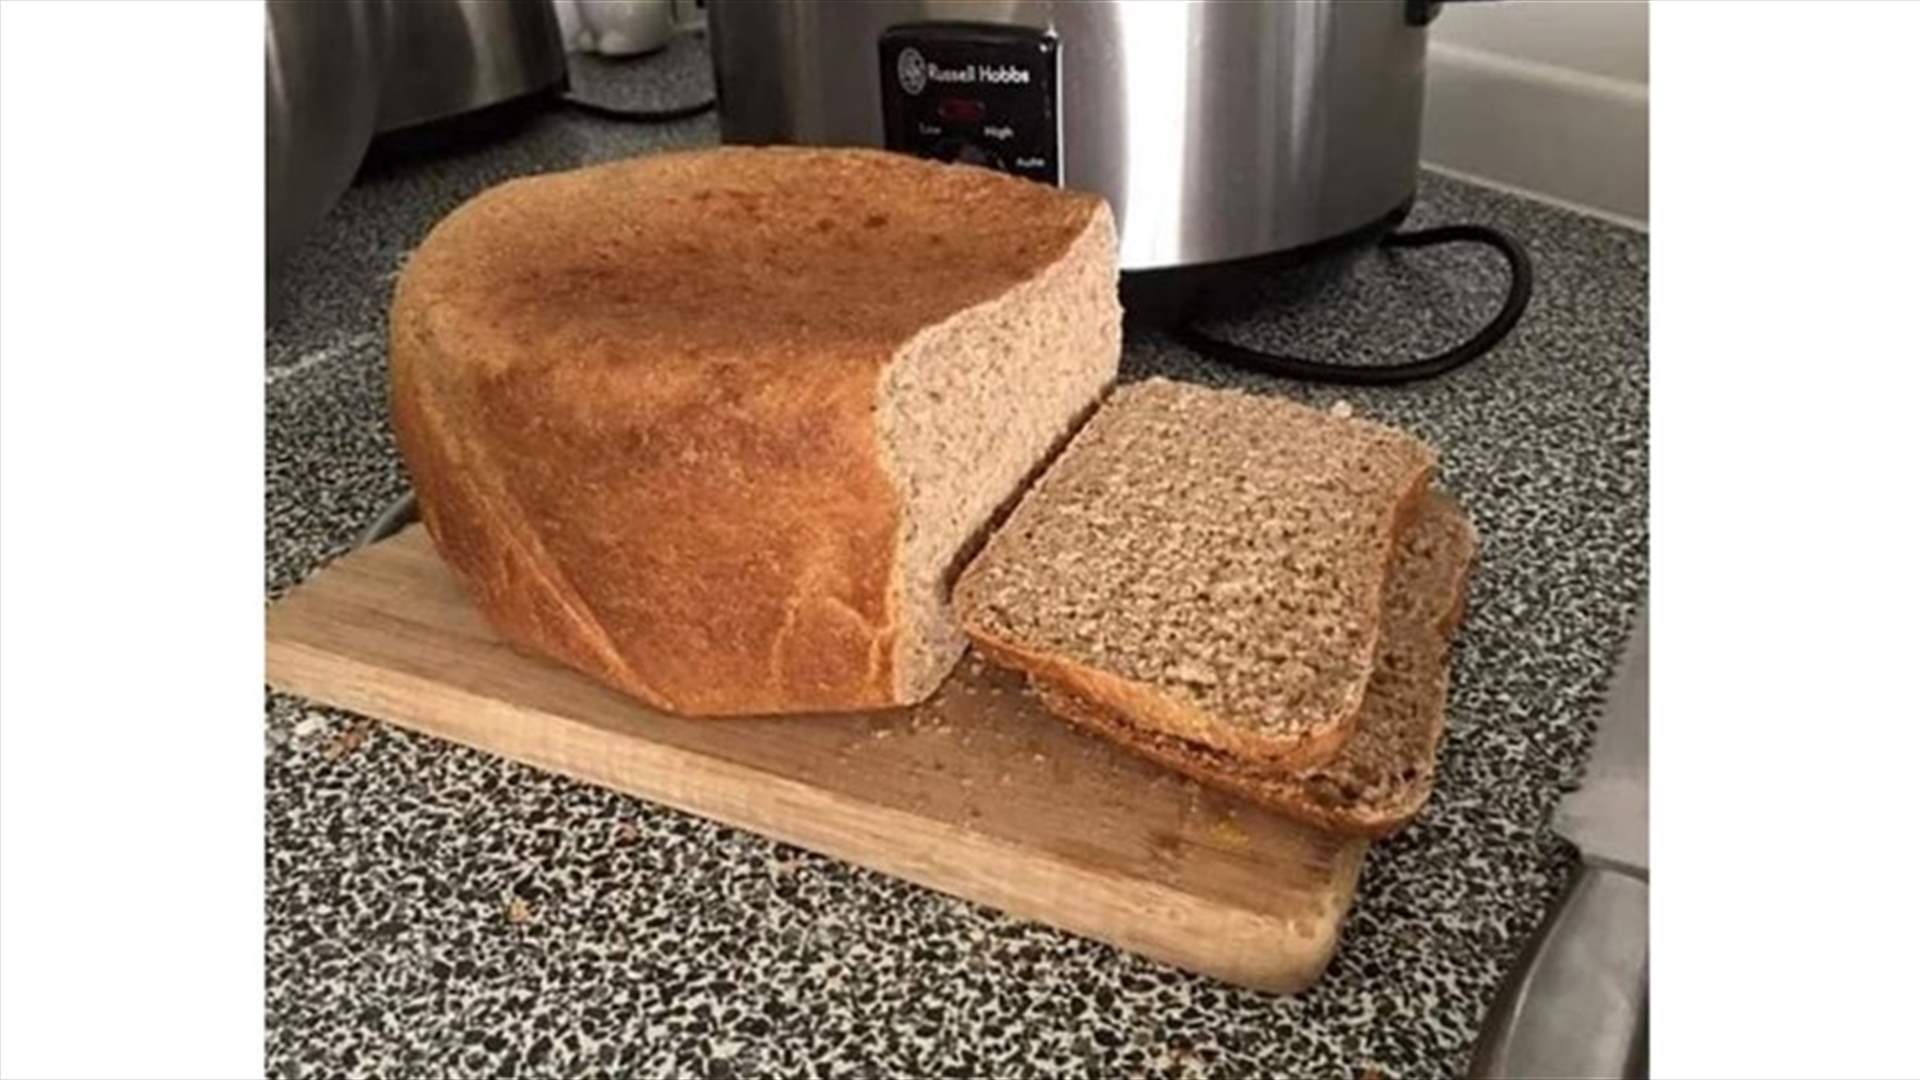 وصفة تحضير الخبز في المنزل... بثلاث خطوات!